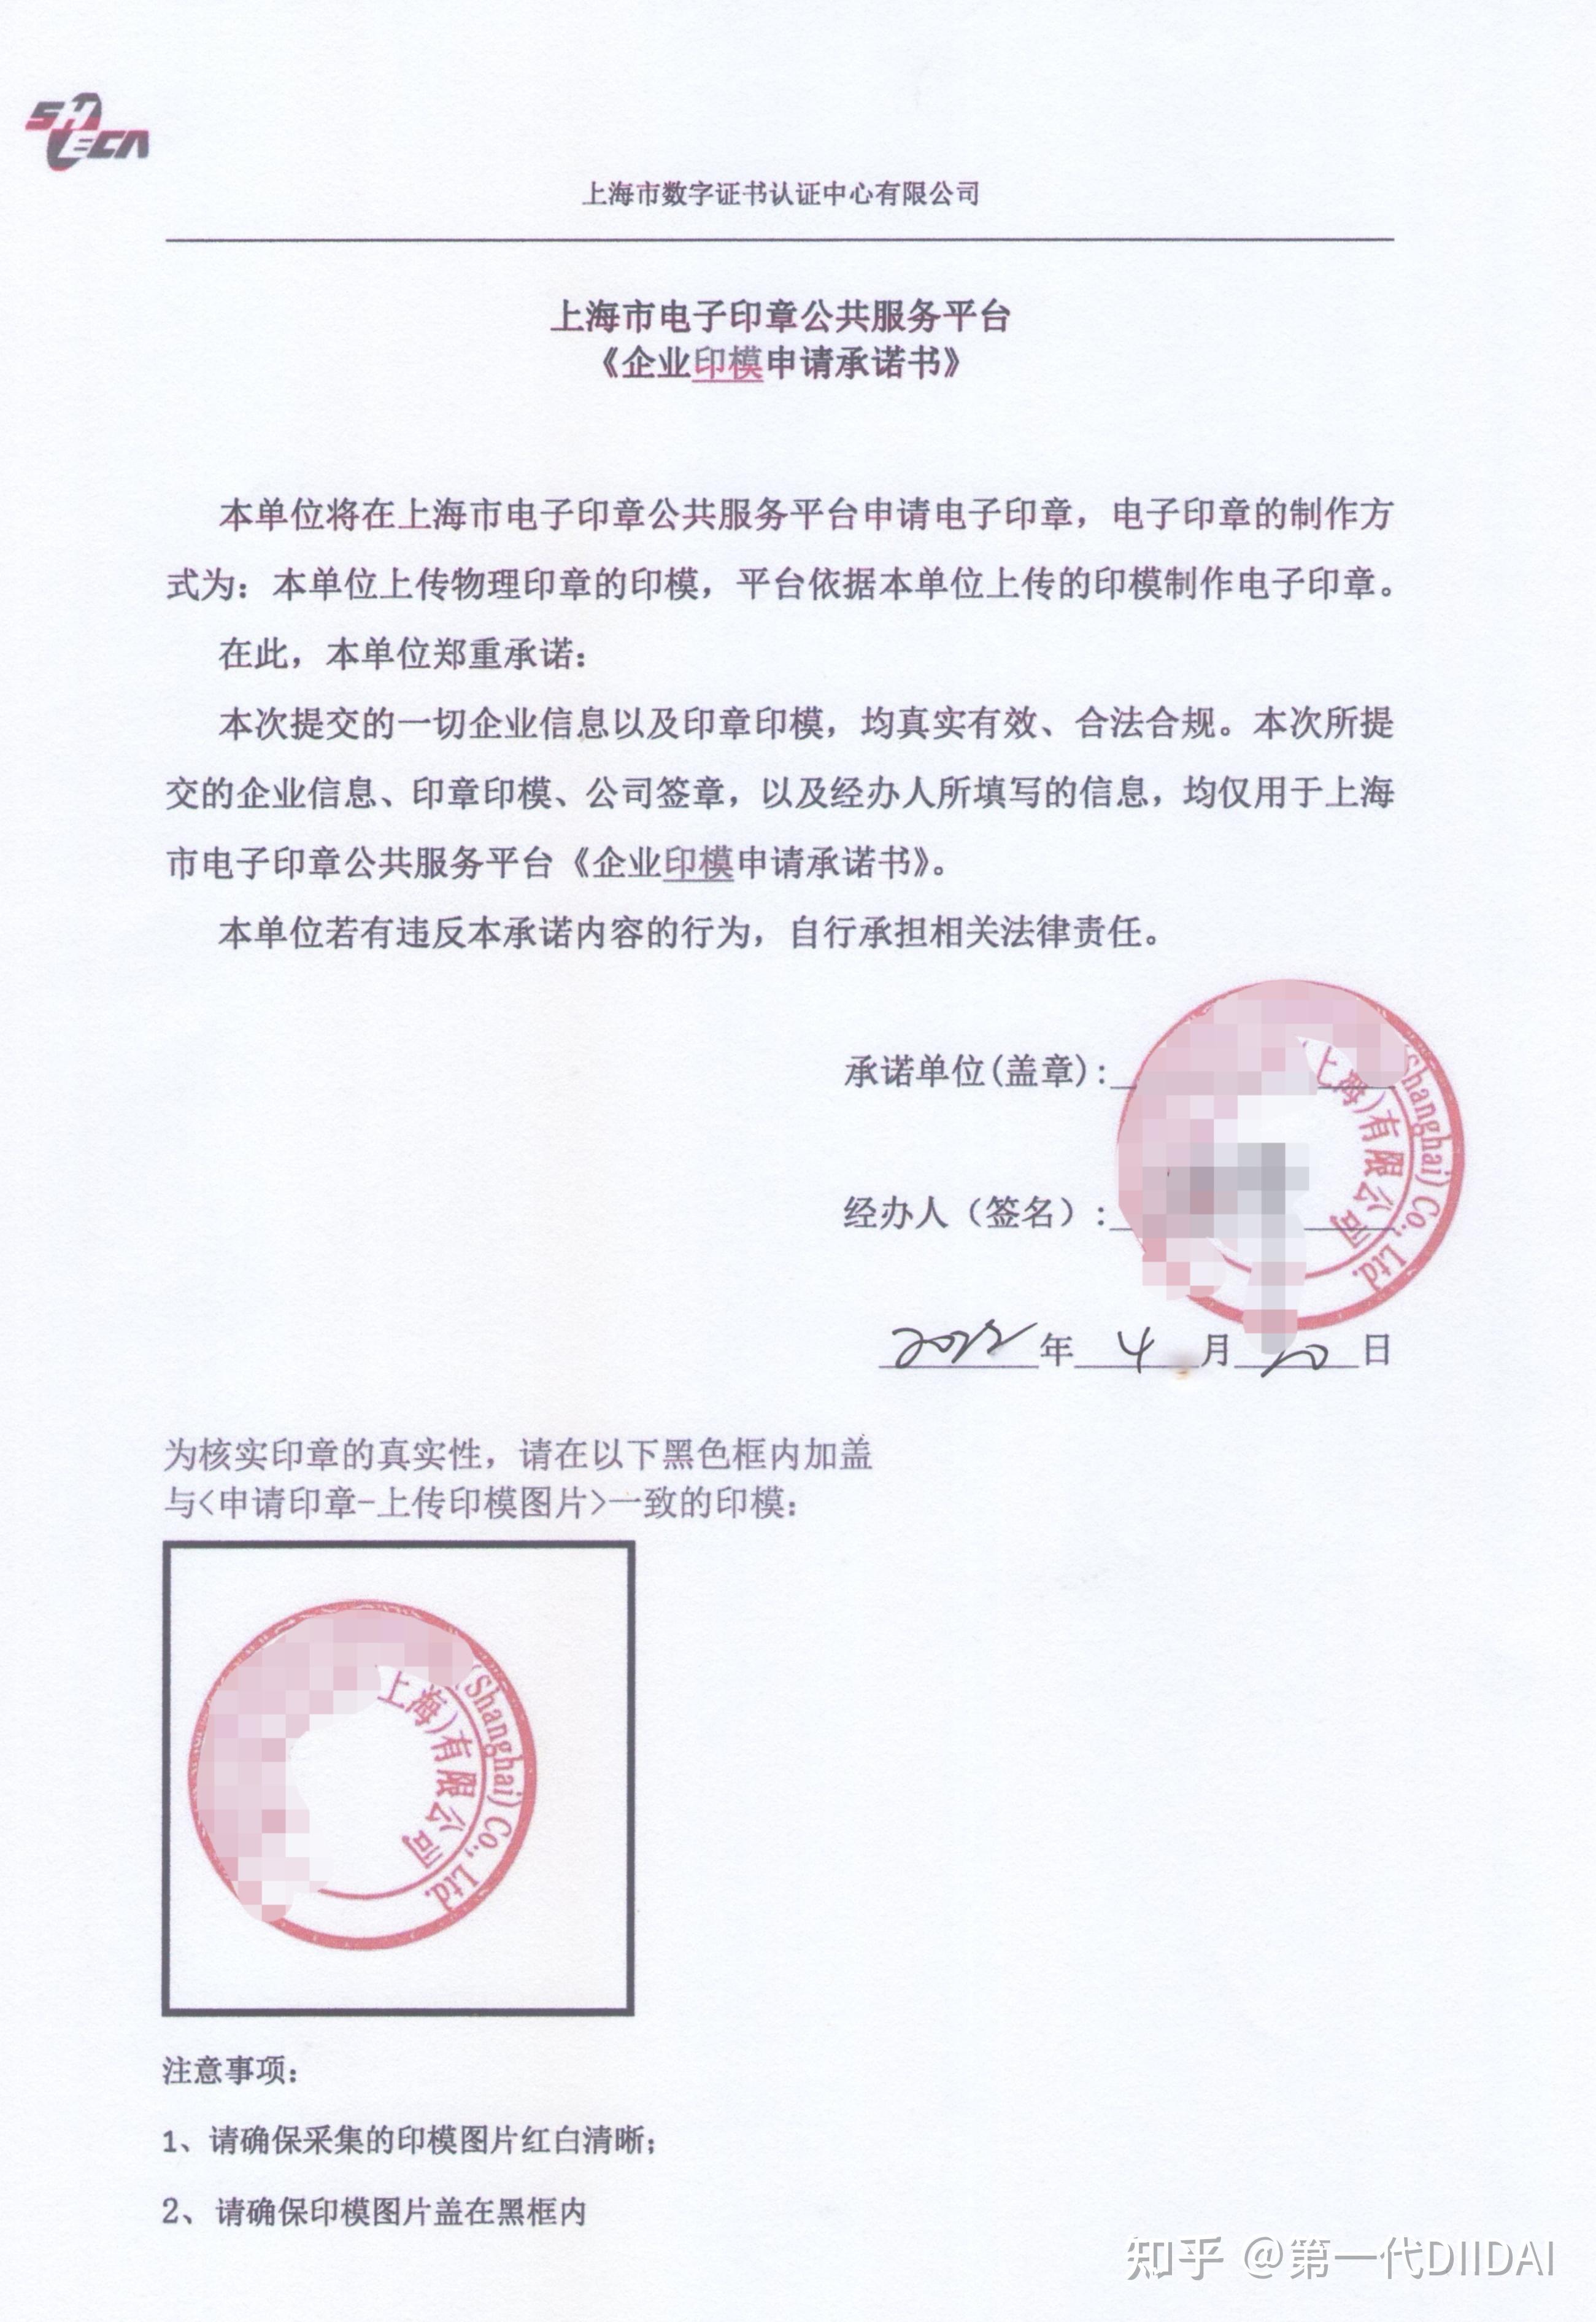 在上海,企业可以在上海市政府的一网通办网站免费申领电子印章